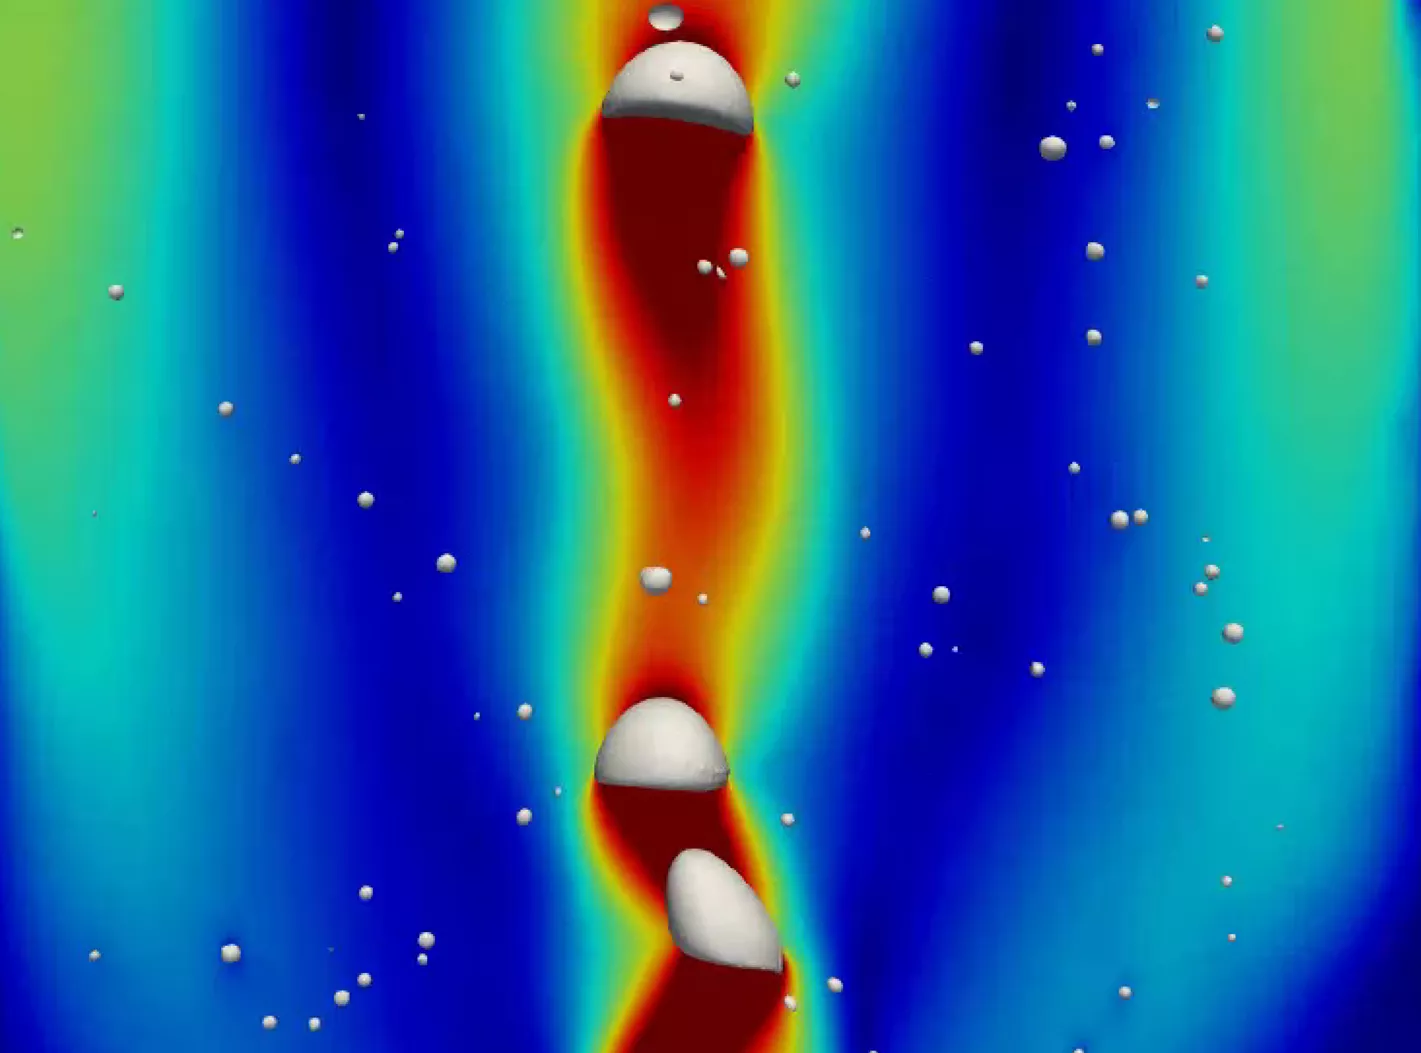 格子玻尔兹曼模拟 格子玻尔兹曼方法 LBM lbm 多相流模拟 多孔介质 沸腾冷凝 湍流